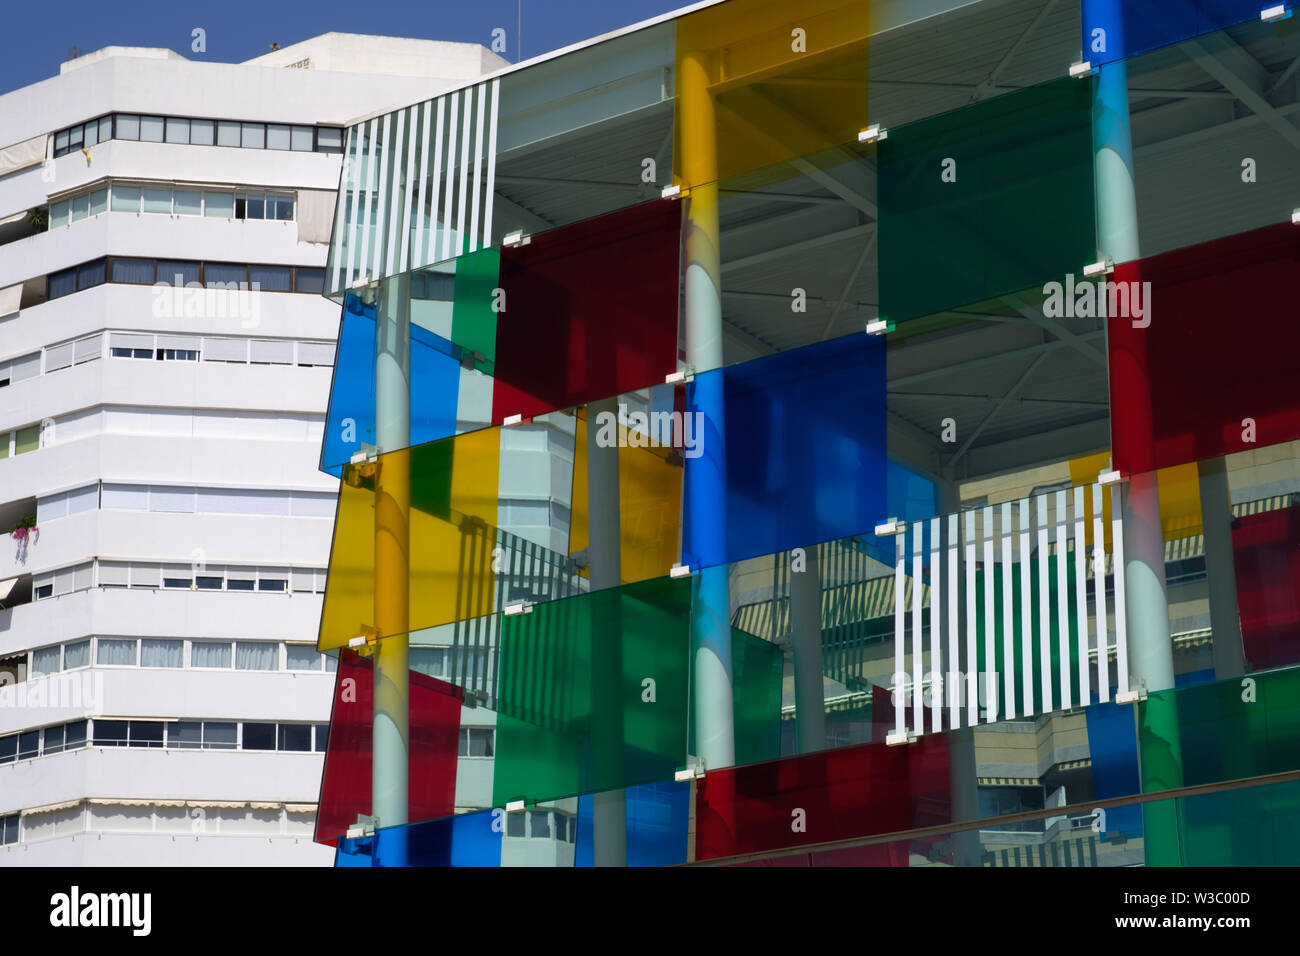 Pompidou Centre in the city of Malaga, Andalucia, Costa del Sol, Spain Stock Photo